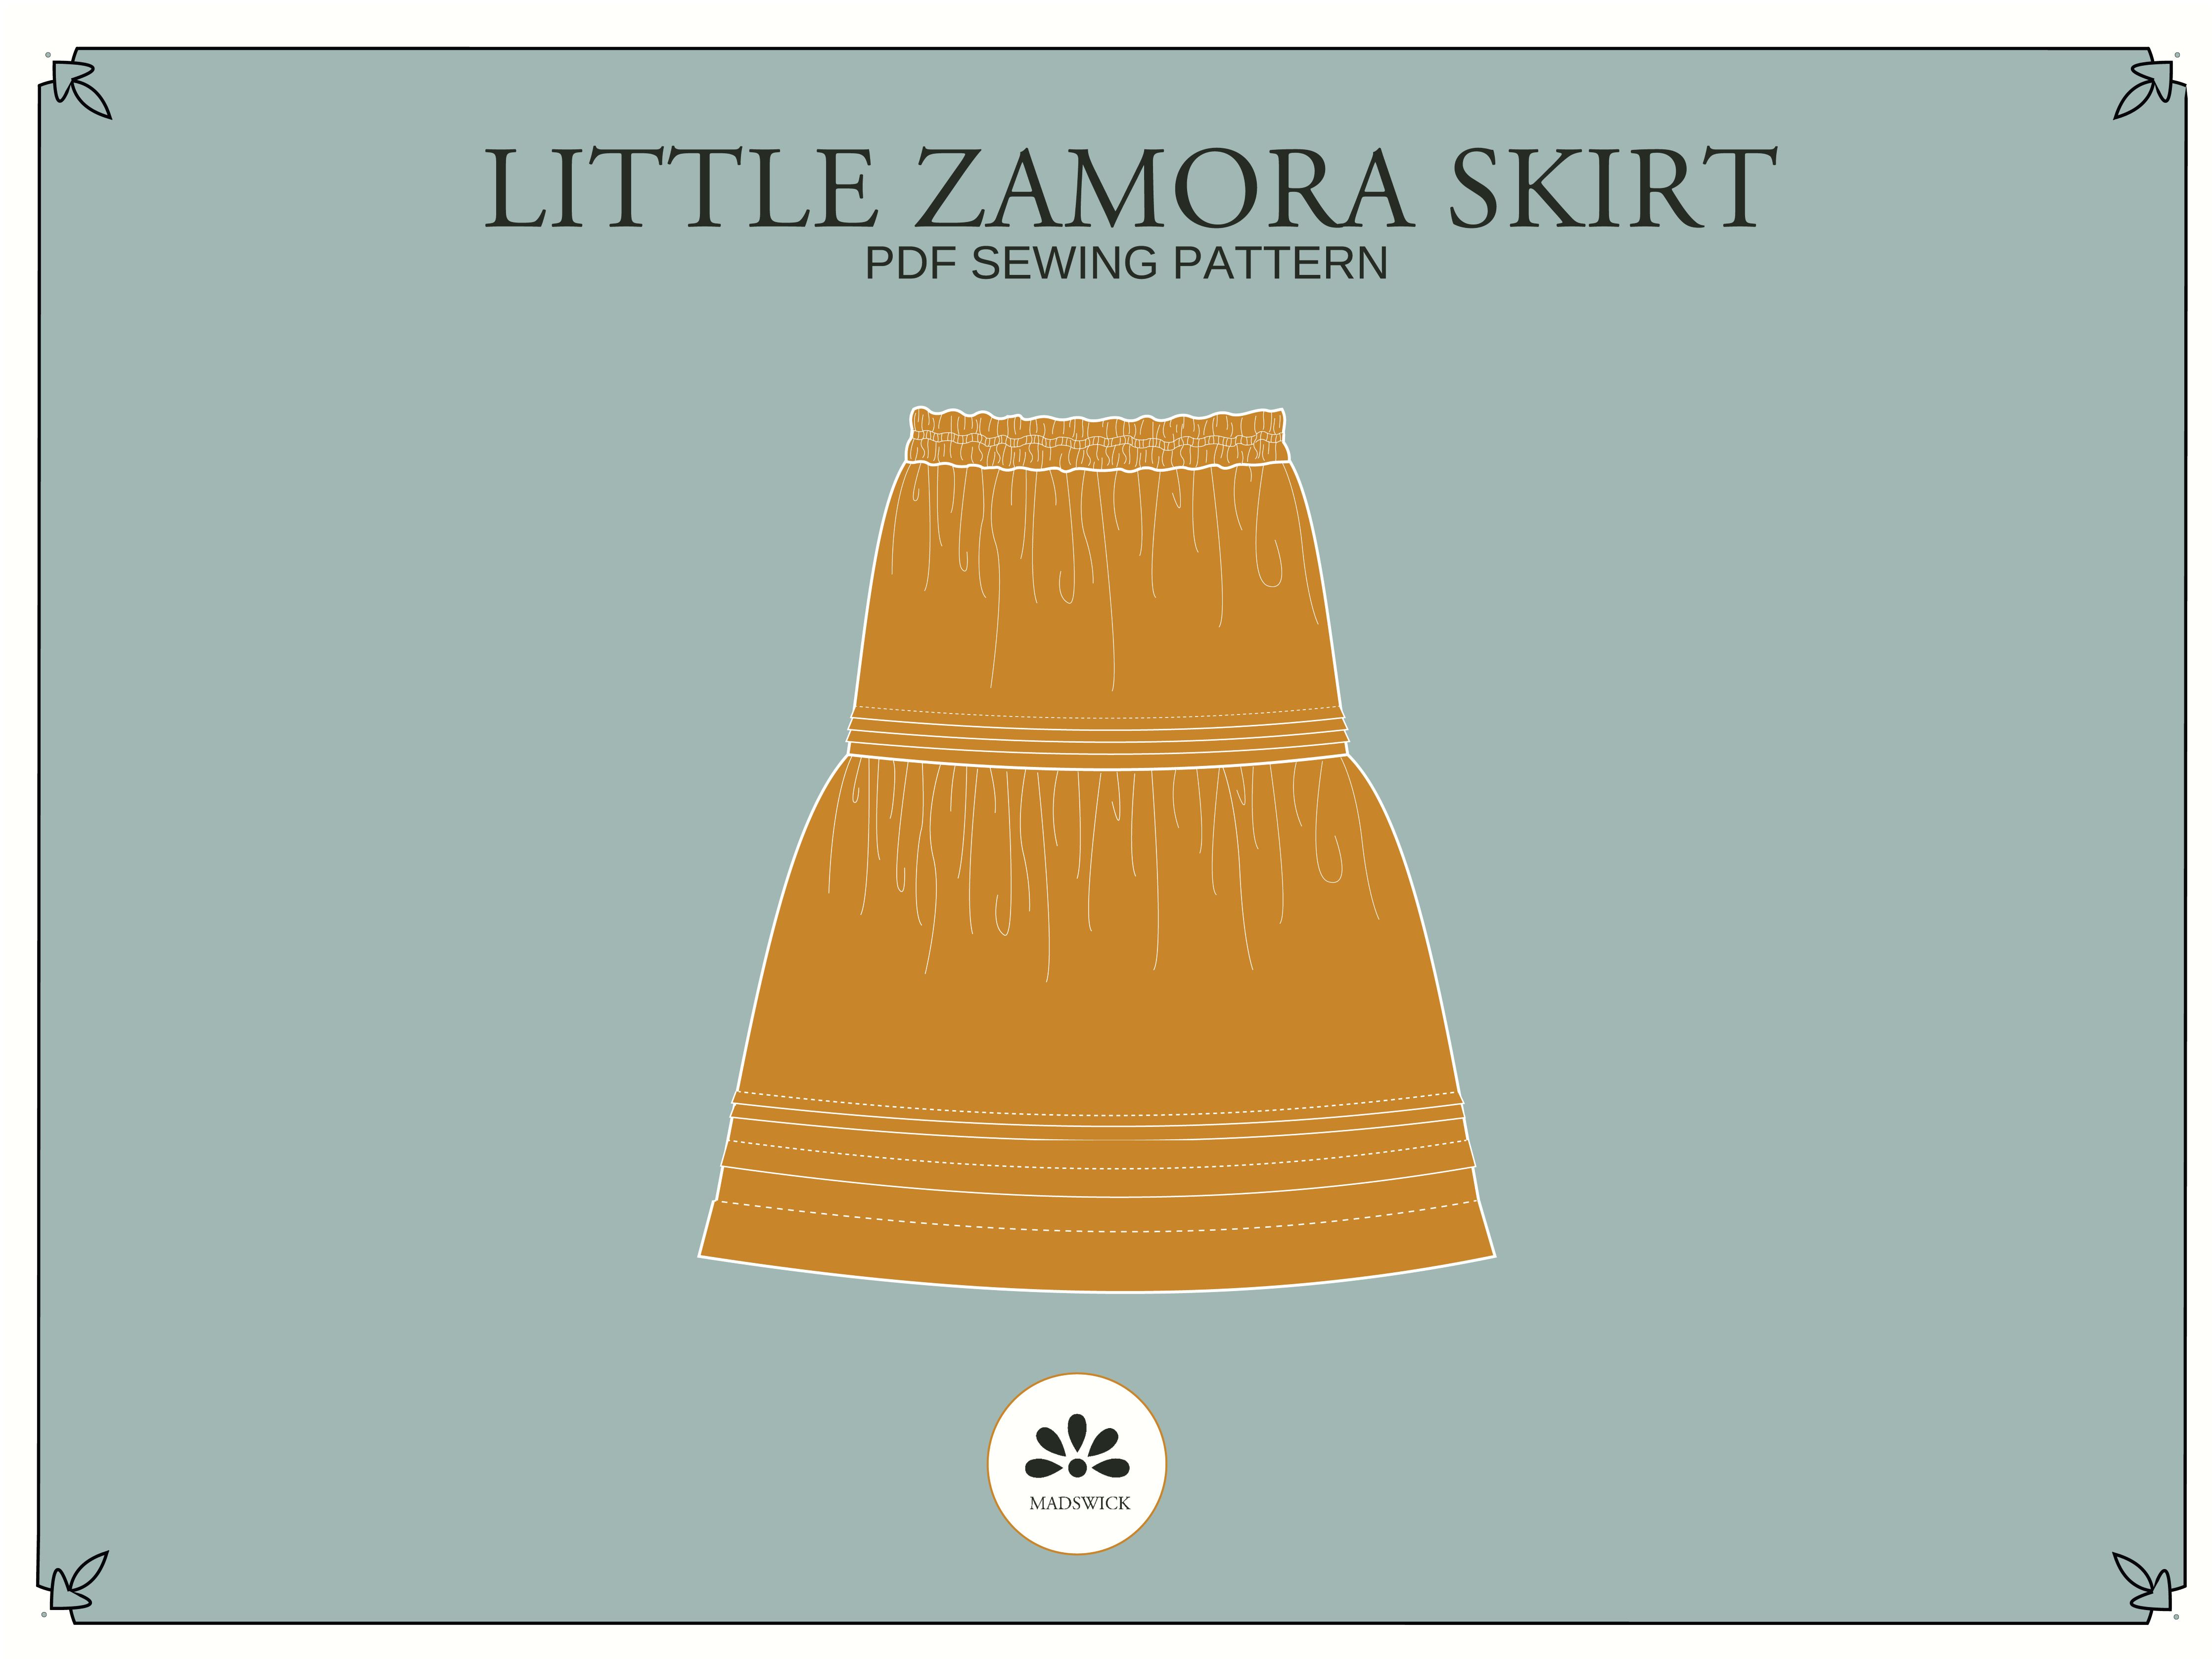 Little Zamora Skirt